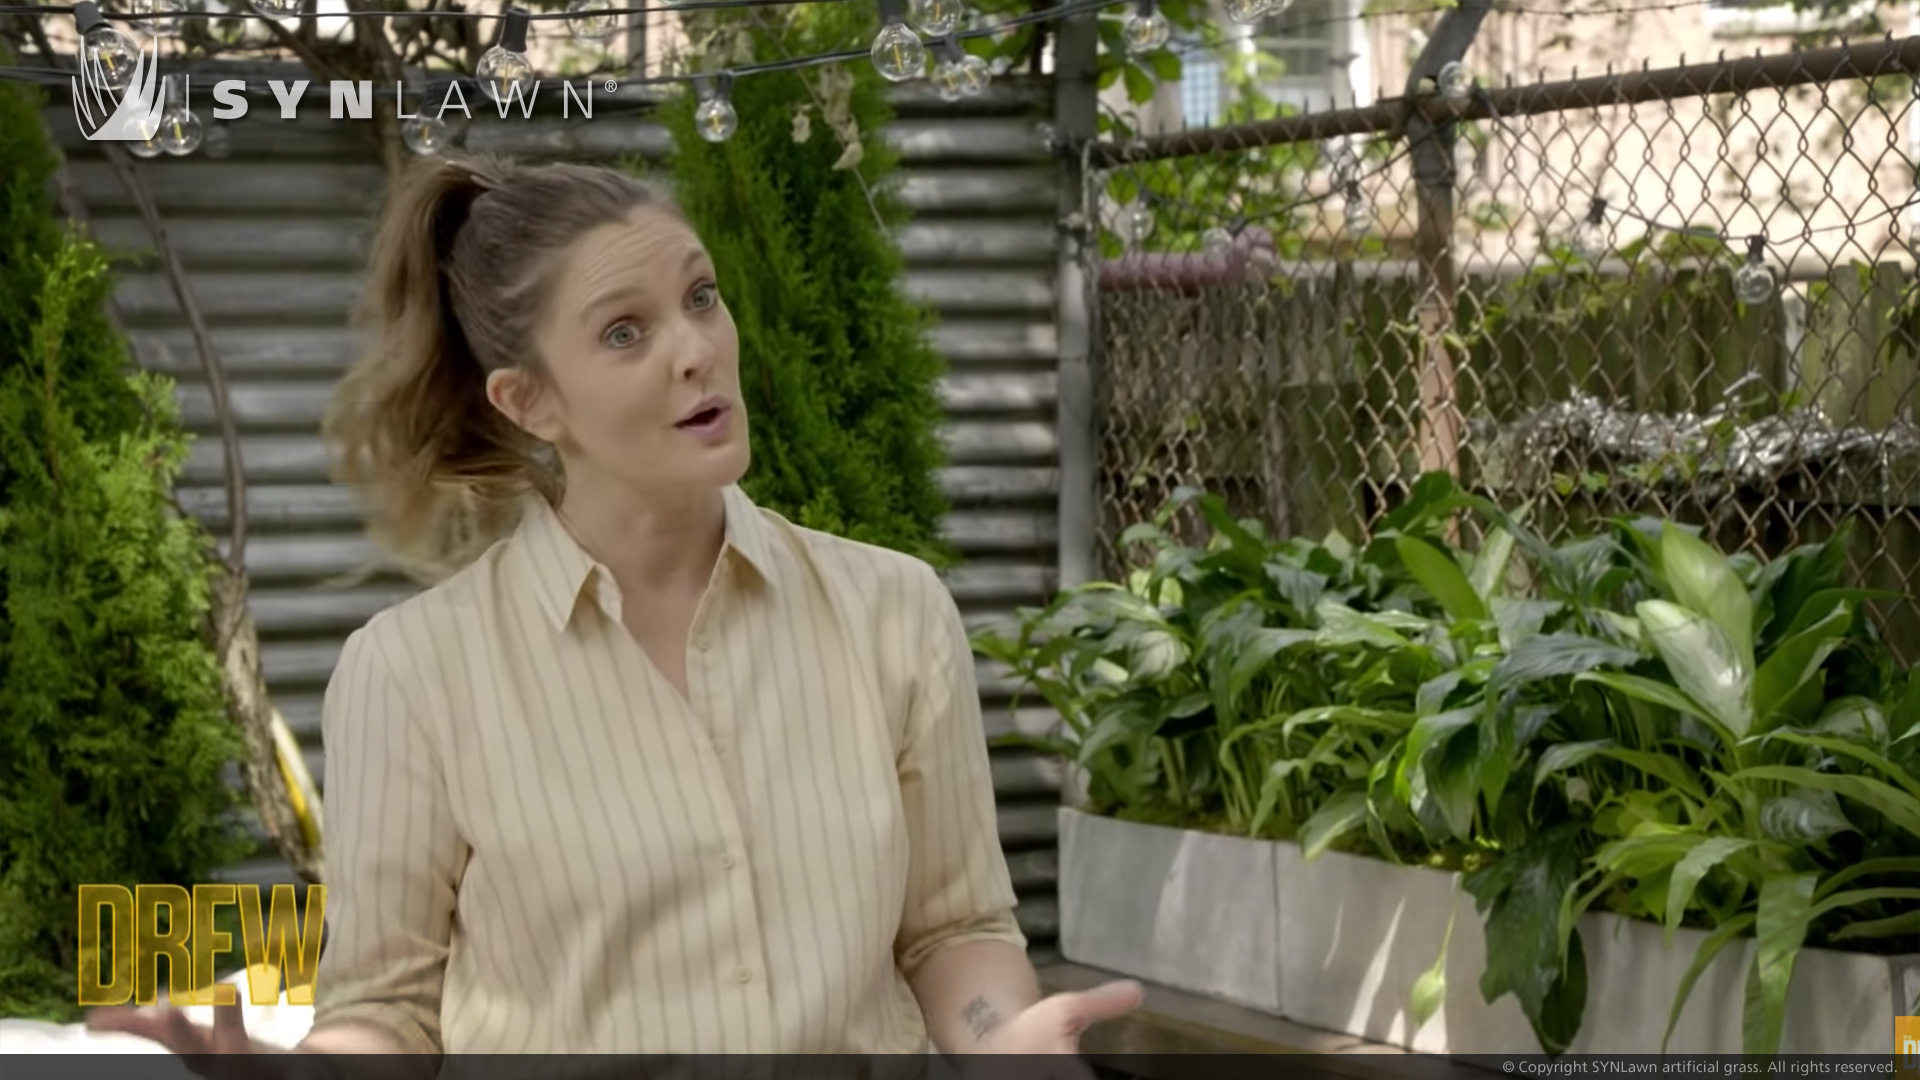 SYNLawn NY dona renovación del patio trasero en The Drew Barrymore Show